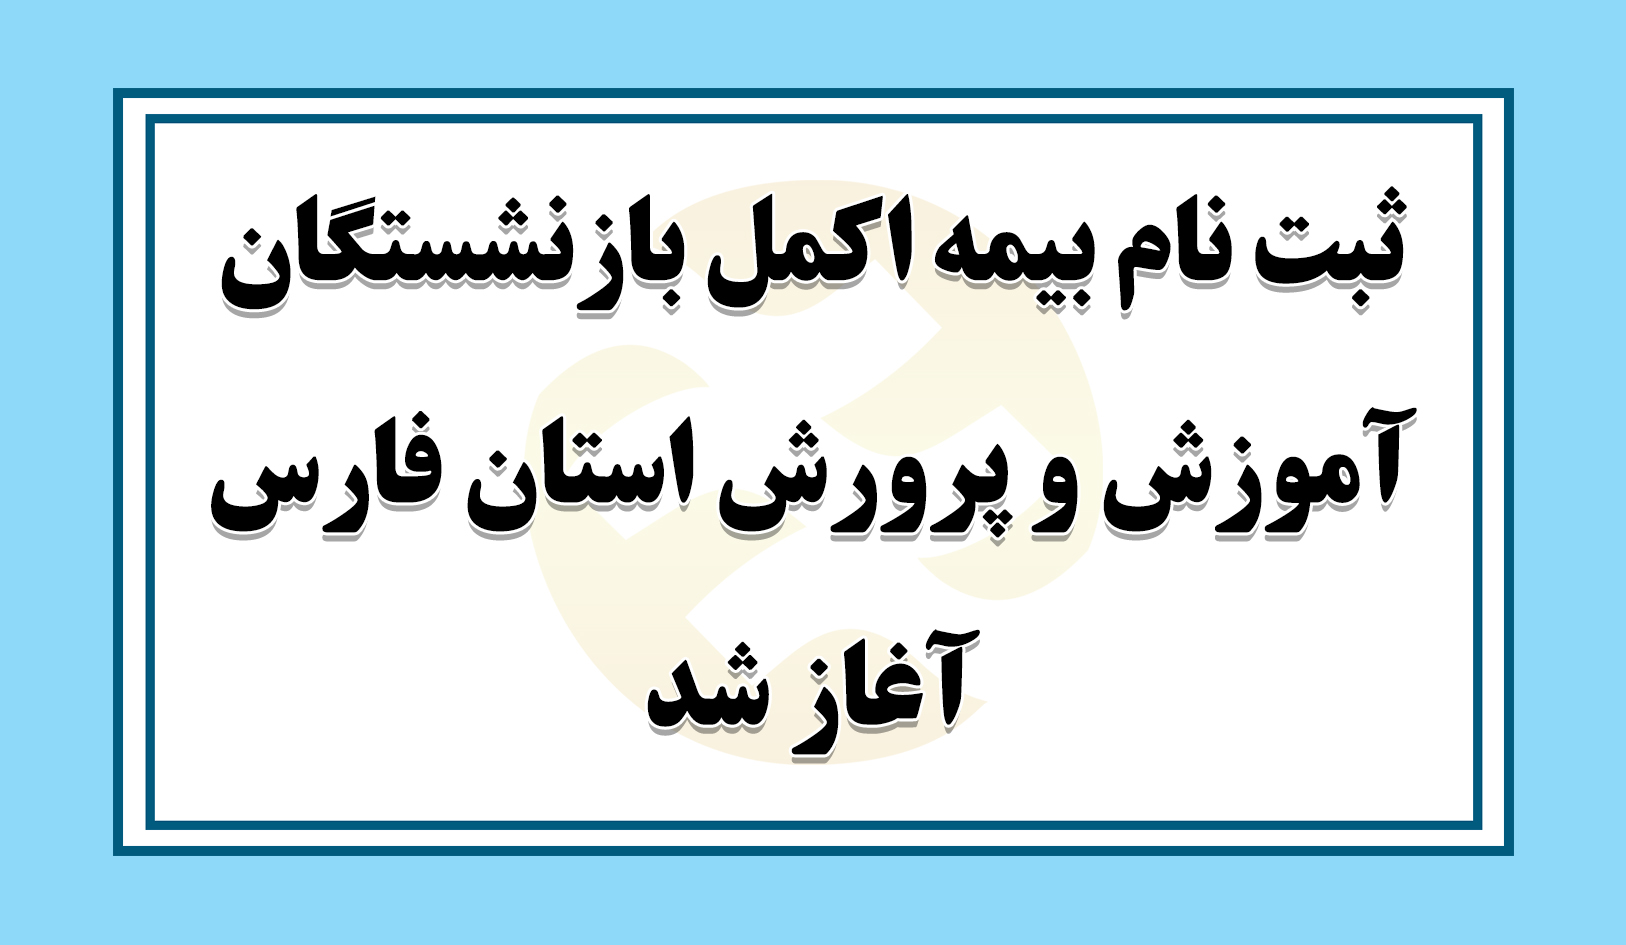 ثبت نام بیمه اکمل بازنشستگان آموزش و پرورش استان فارس آغاز شد/ همراه با جزئیات